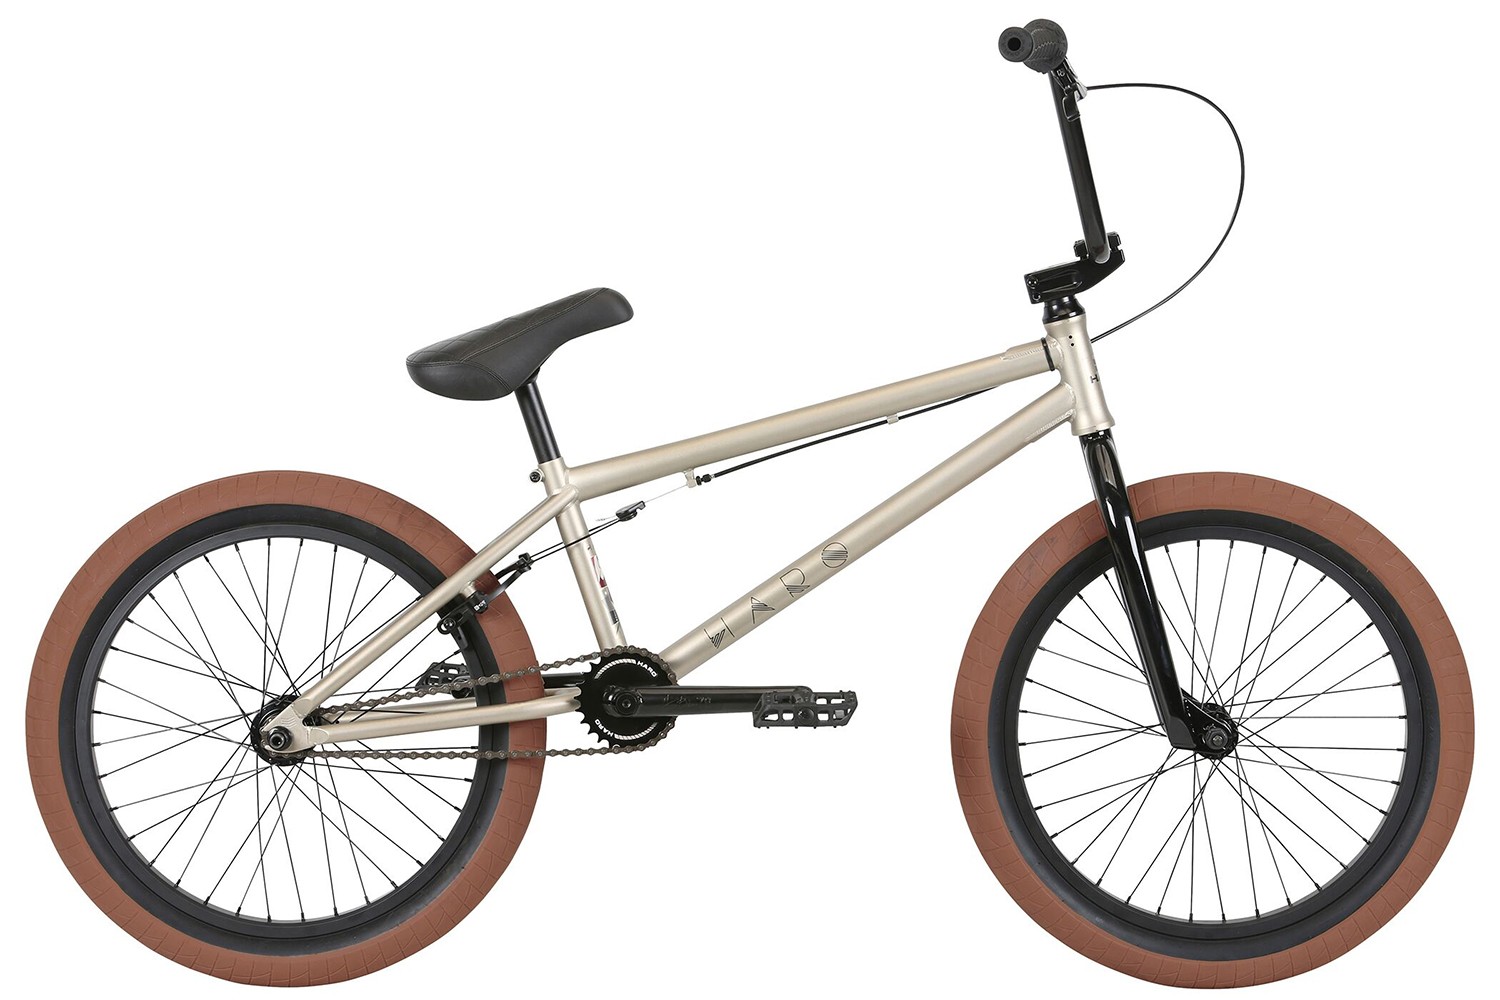 Велосипед BMX HARO Midway (2020)